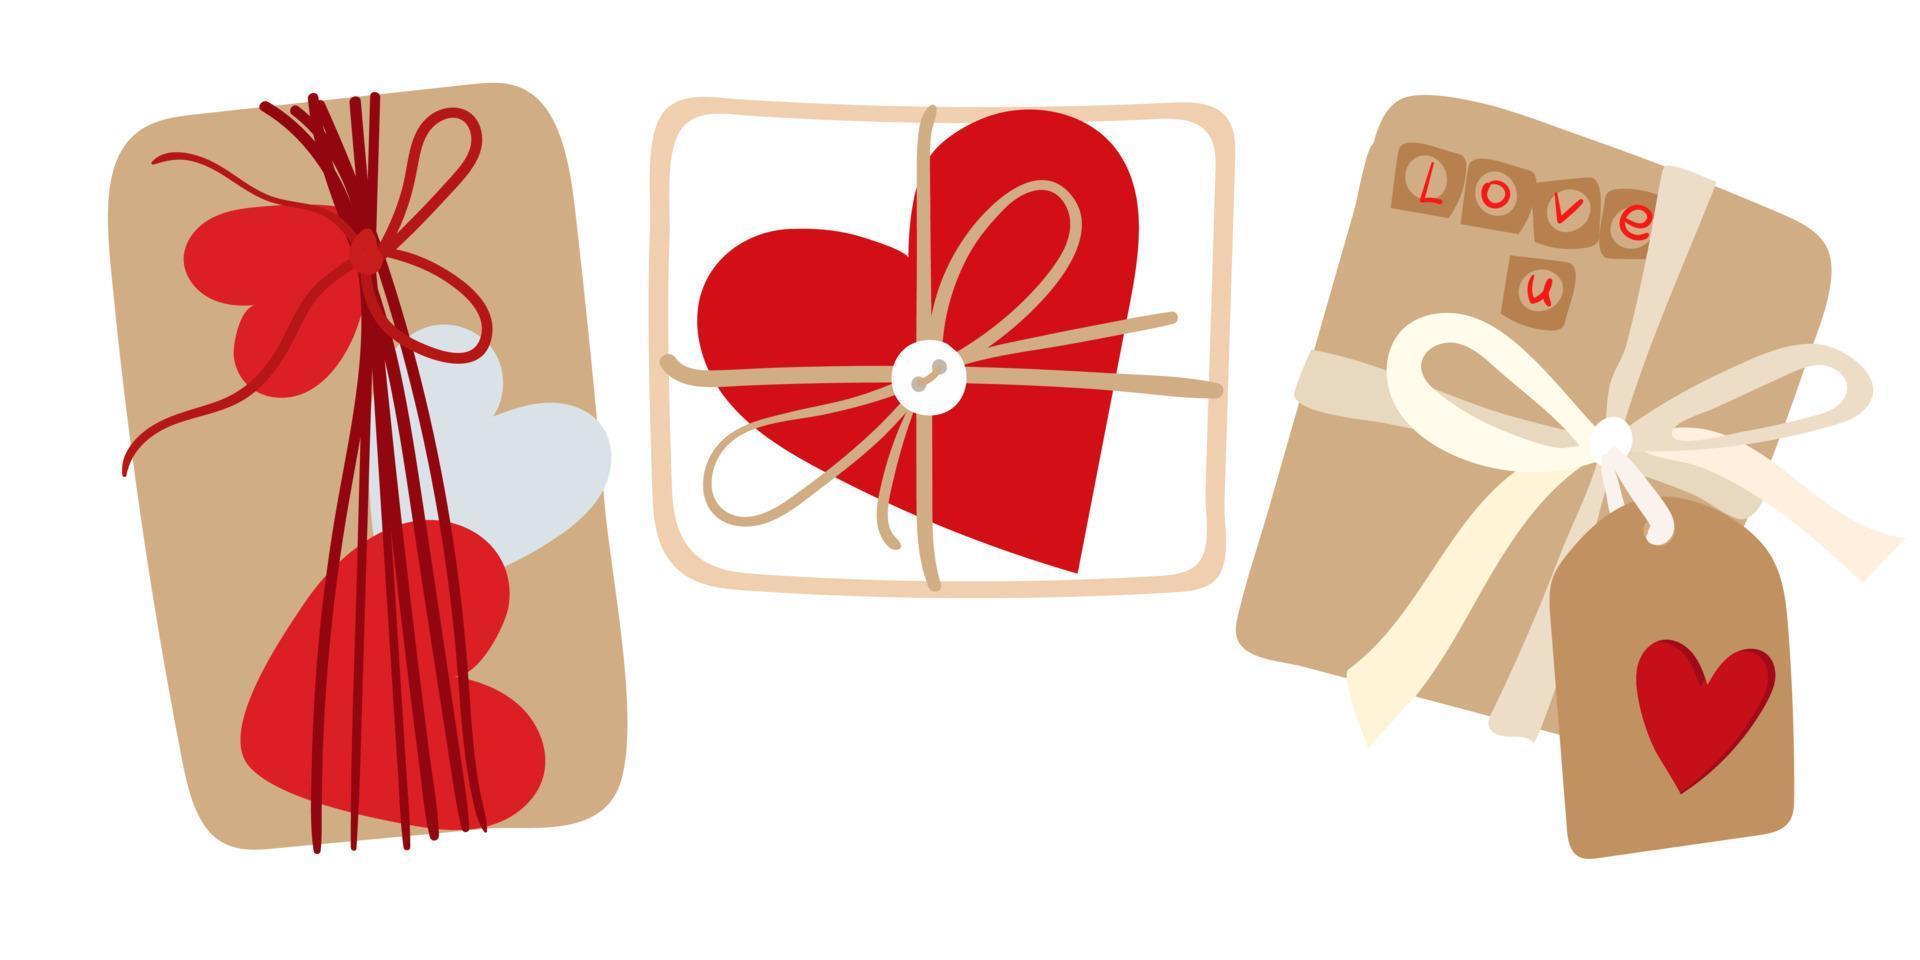 un ensemble de cadeaux. cadeaux de saint valentin emballés simples sur fond blanc. les cadeaux dans la palette de couleurs principale sont le rouge, le blanc et le beige. illustration isolée pour l'impression sur des cartes postales et des bannières. vecteur